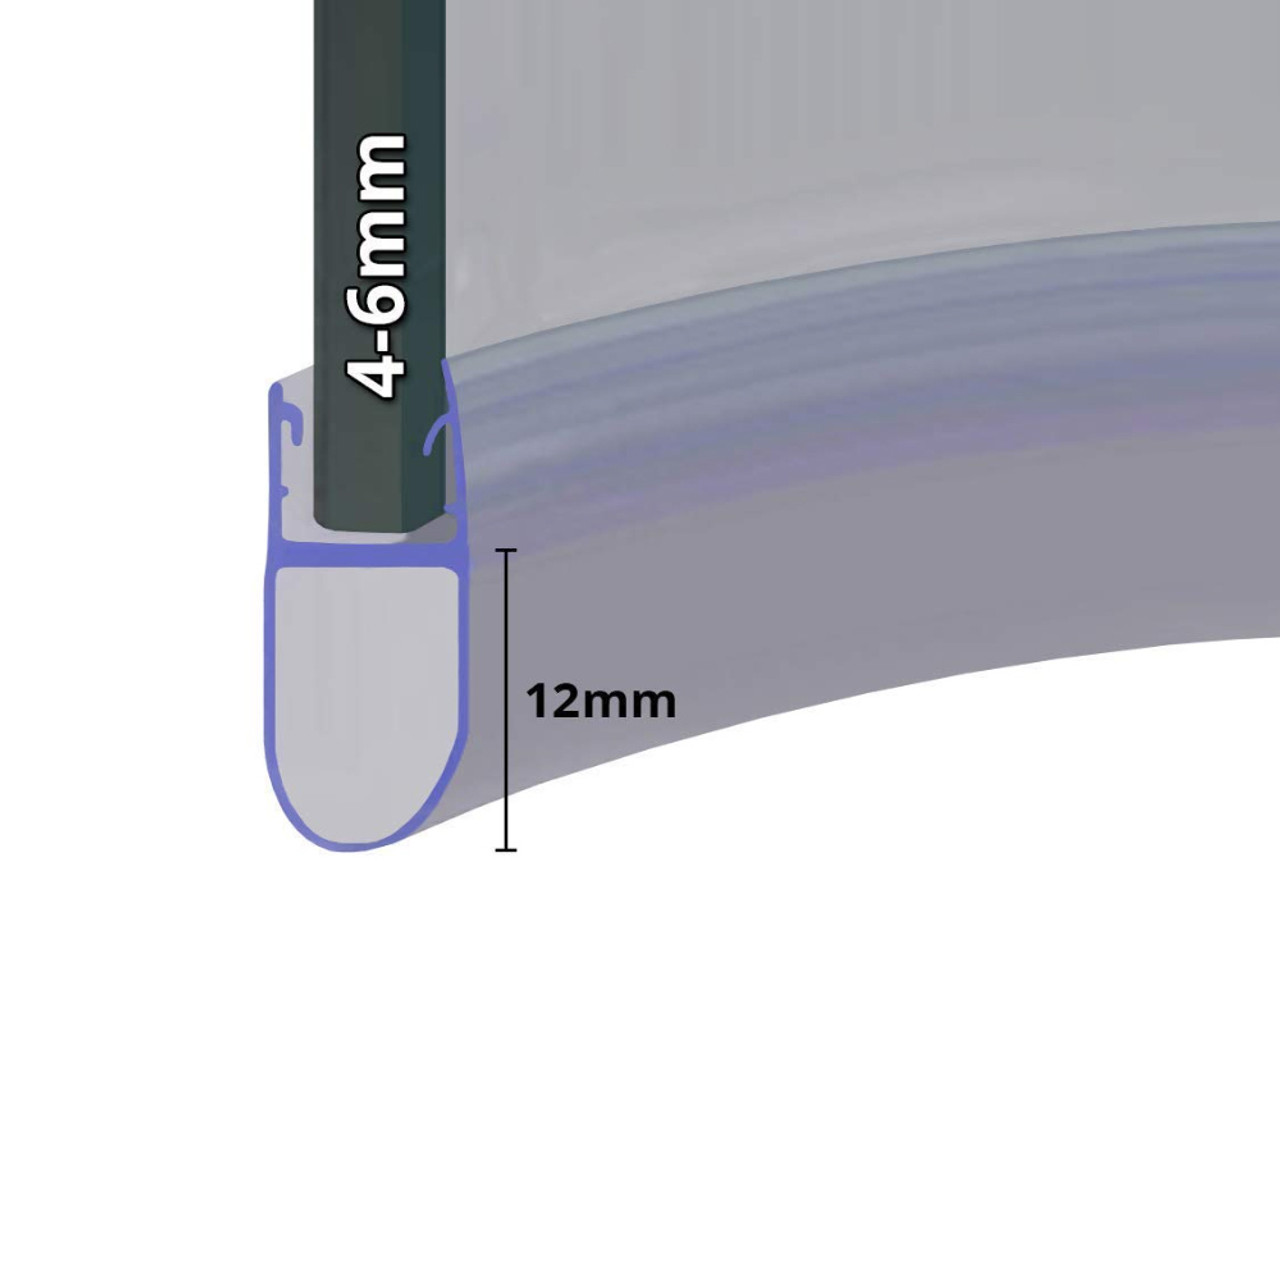 Shower seal UK11 for glass thicknesses 6-8 mm - Steigner